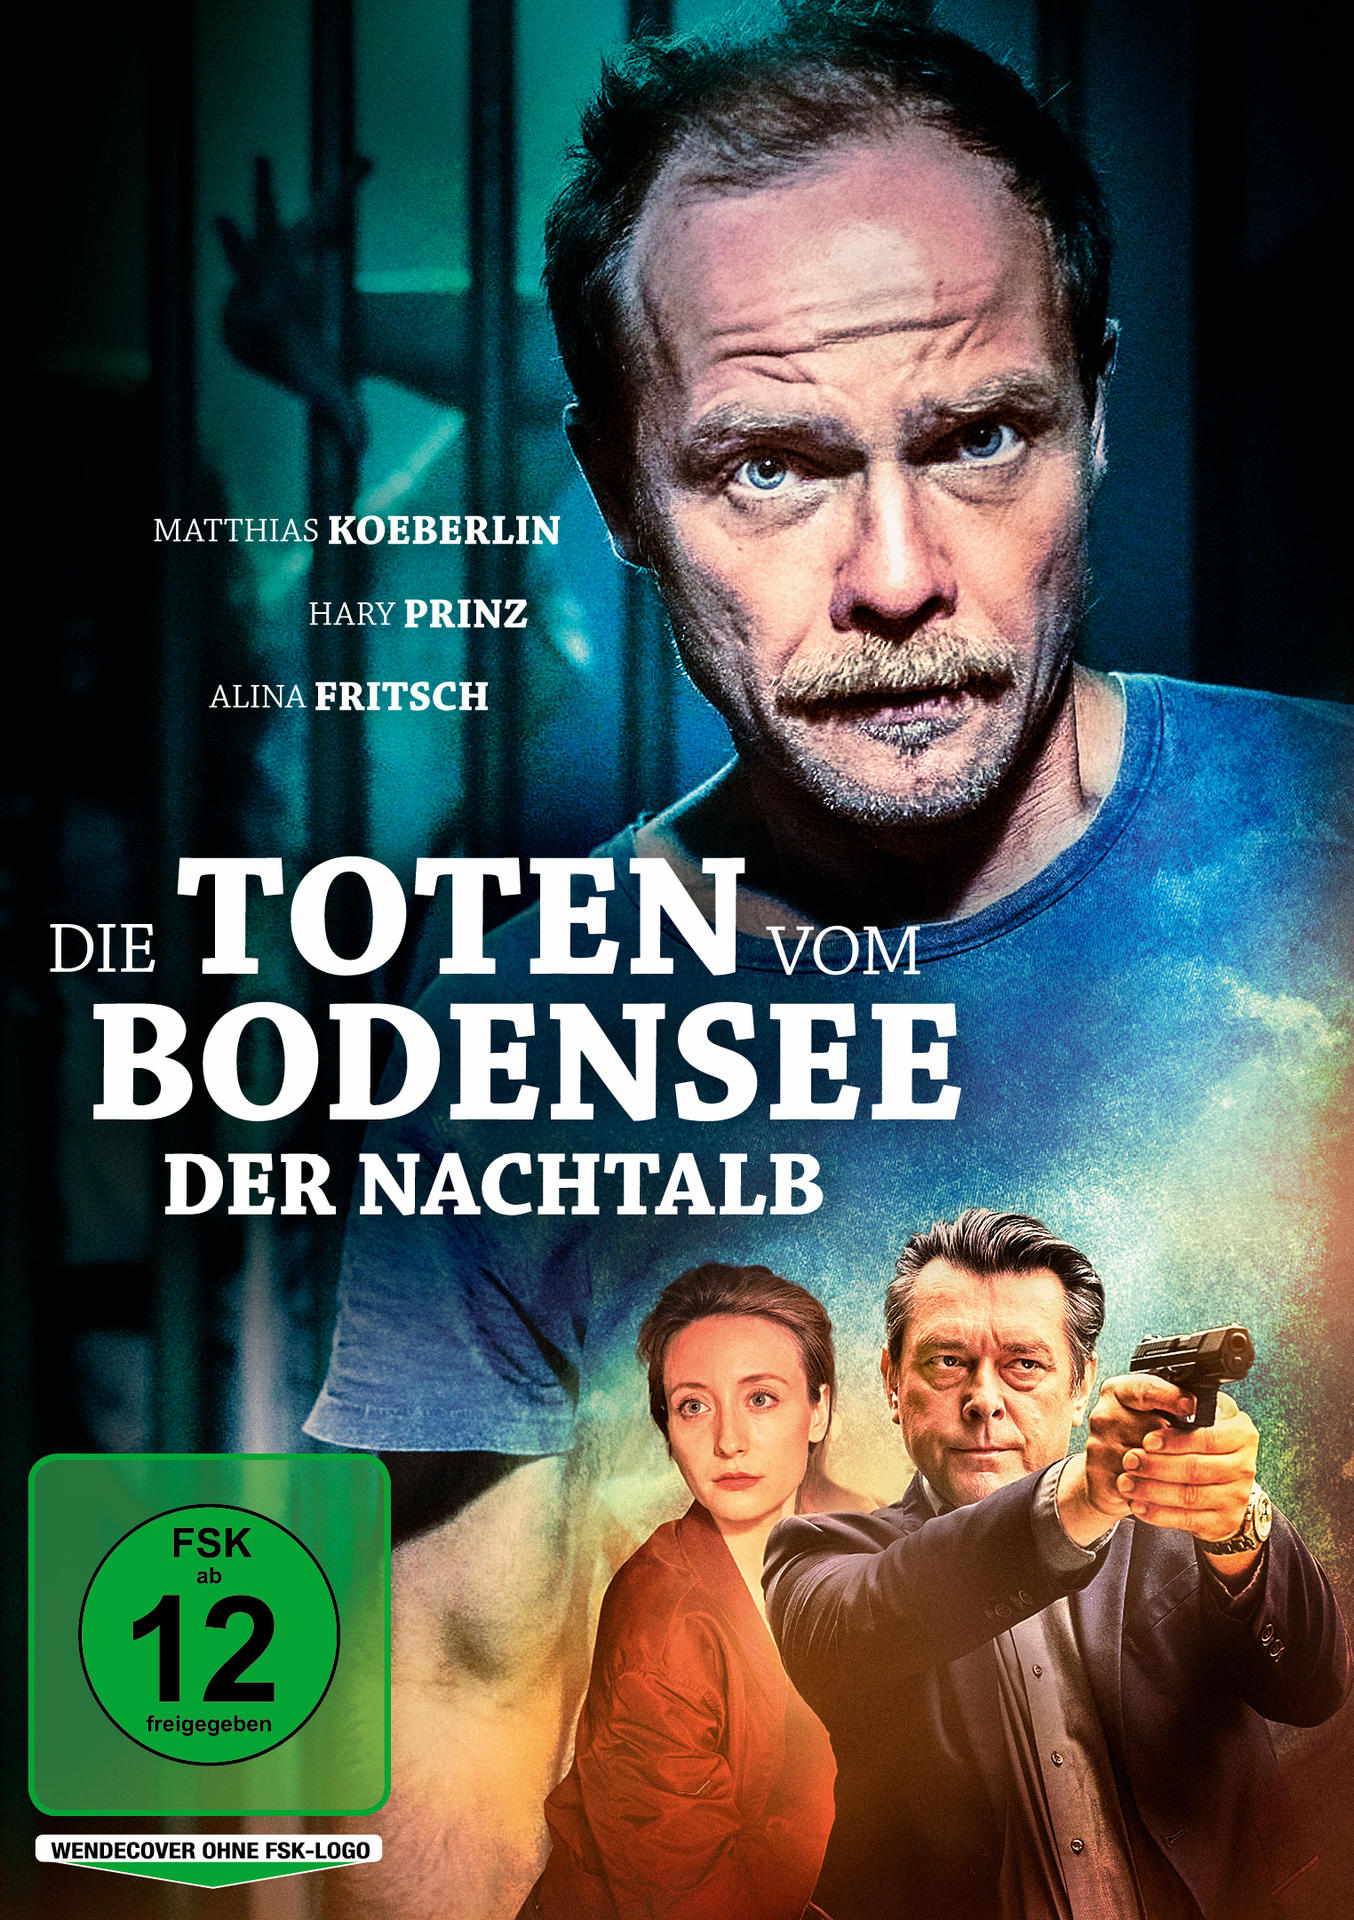 Bodensee: Die DVD vom Nachtalb Toten Der